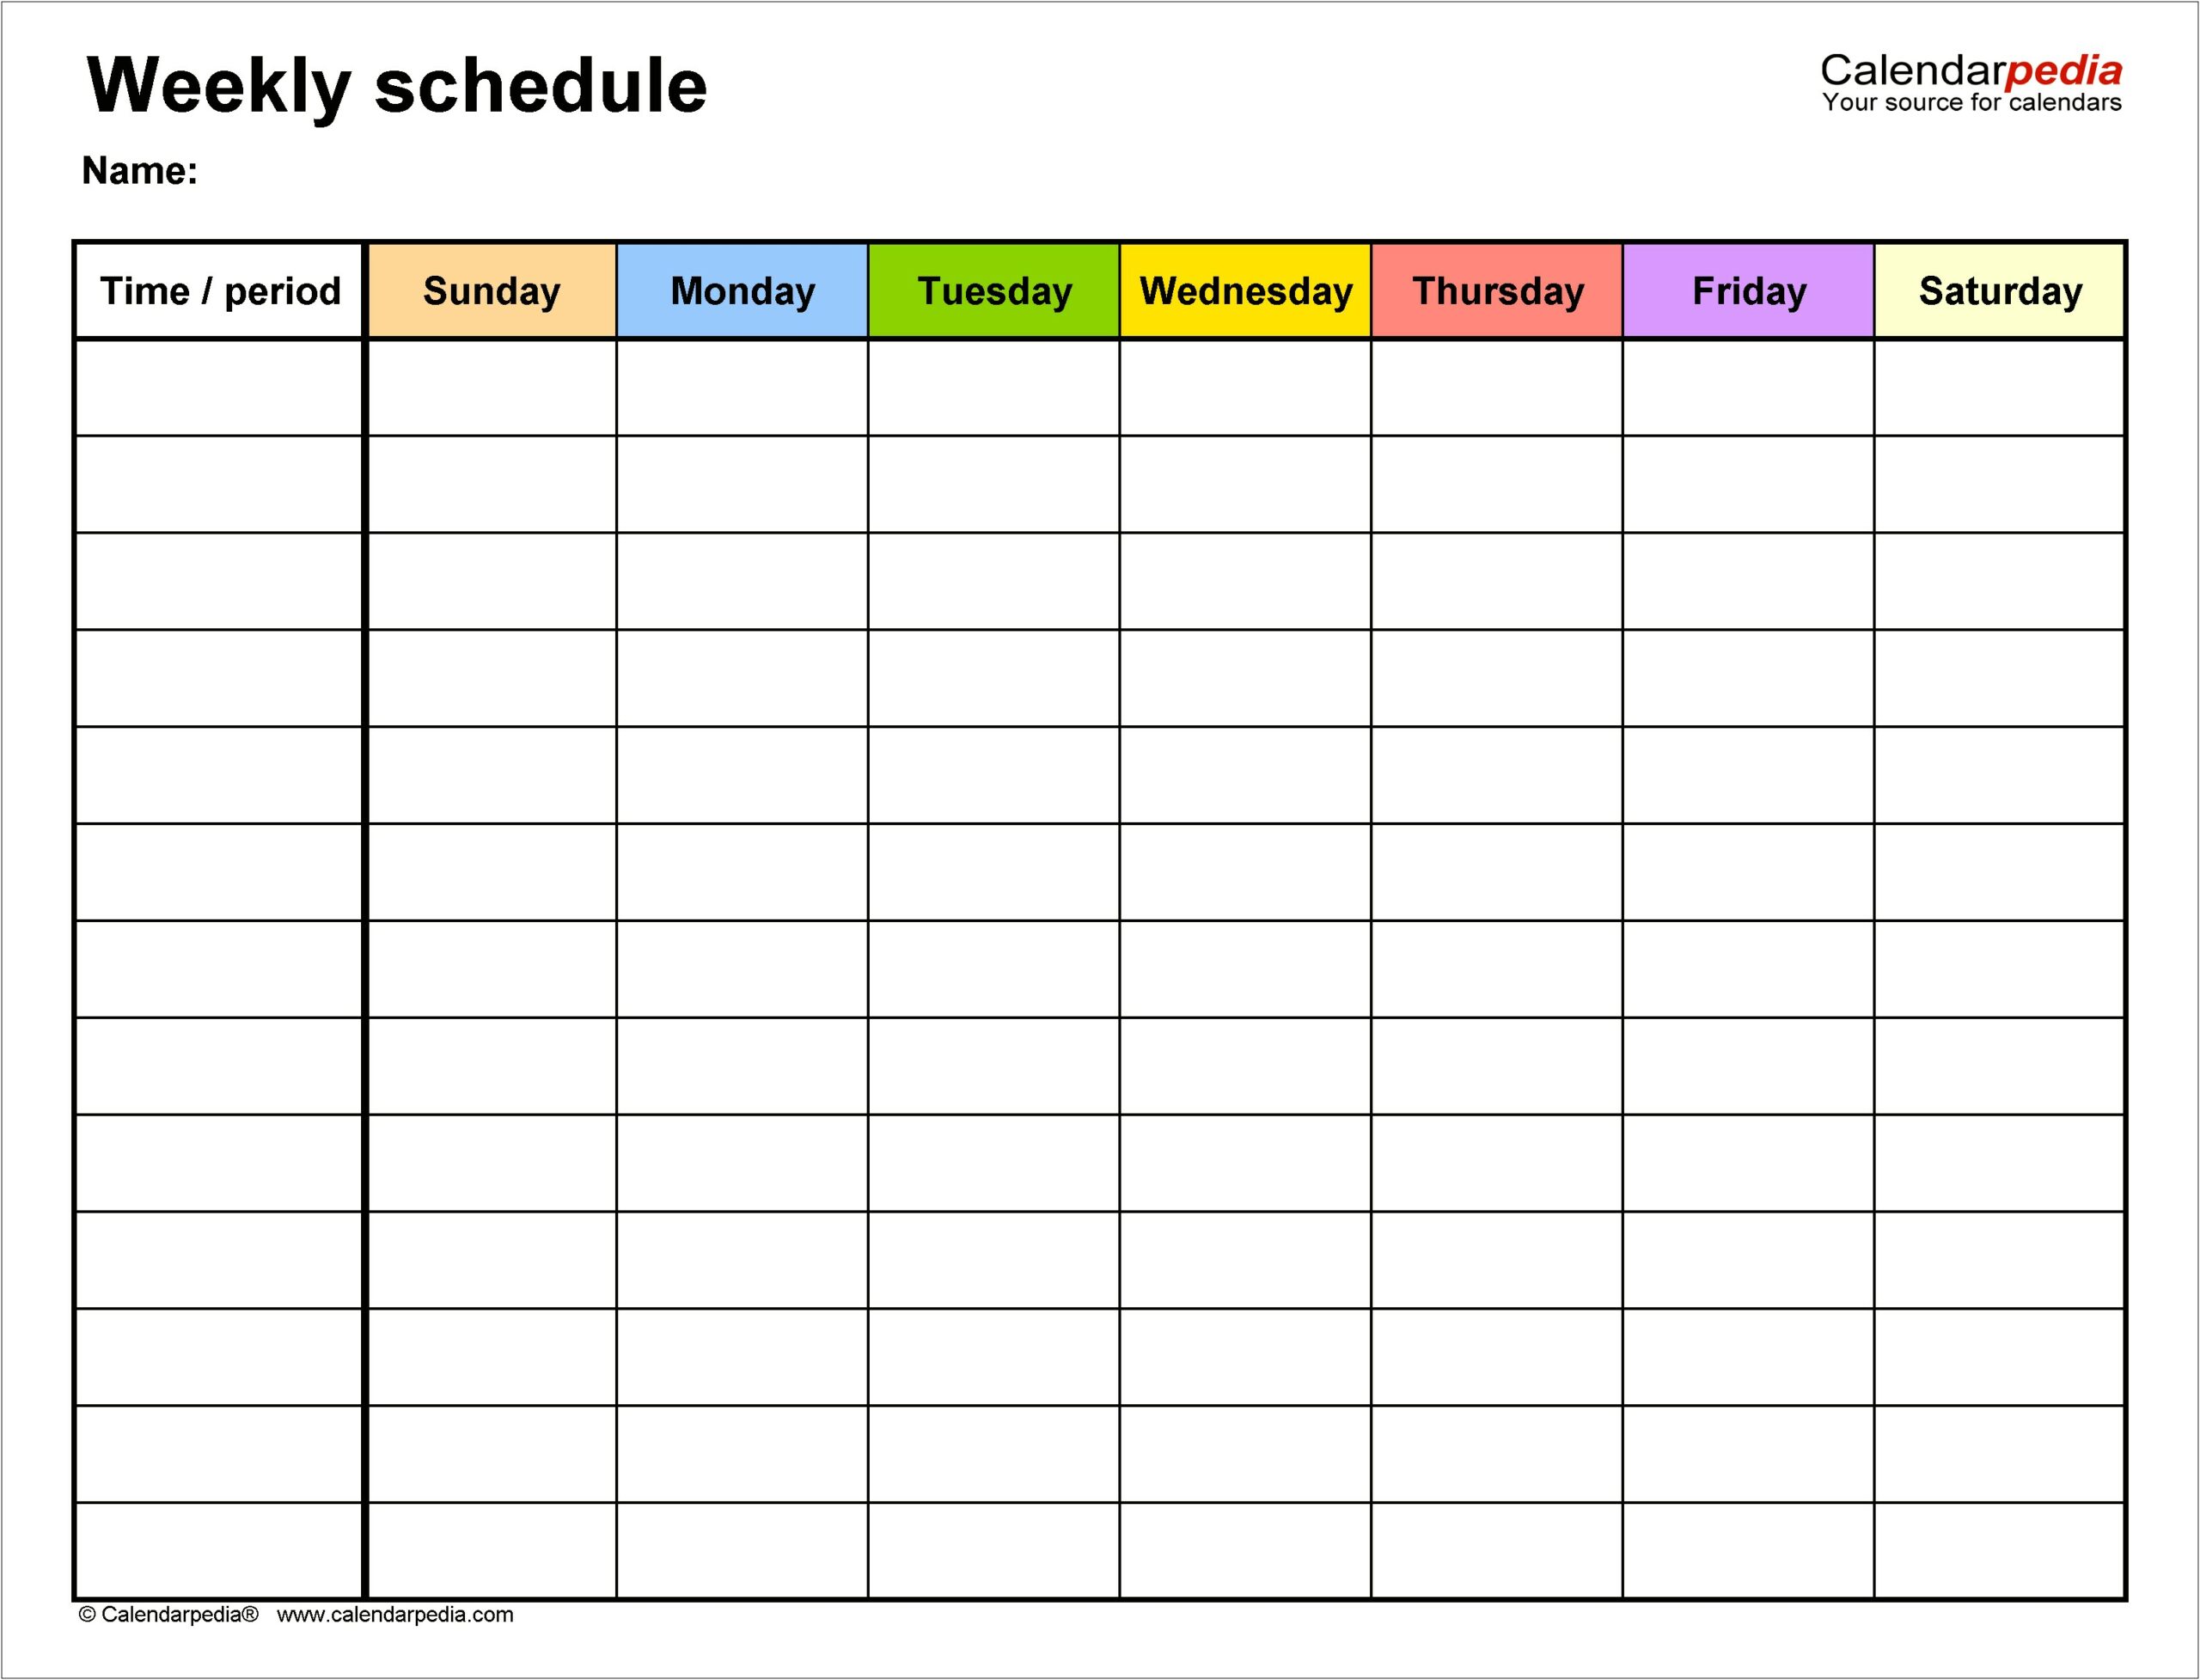 Free Bi Weekly Work Schedule Template